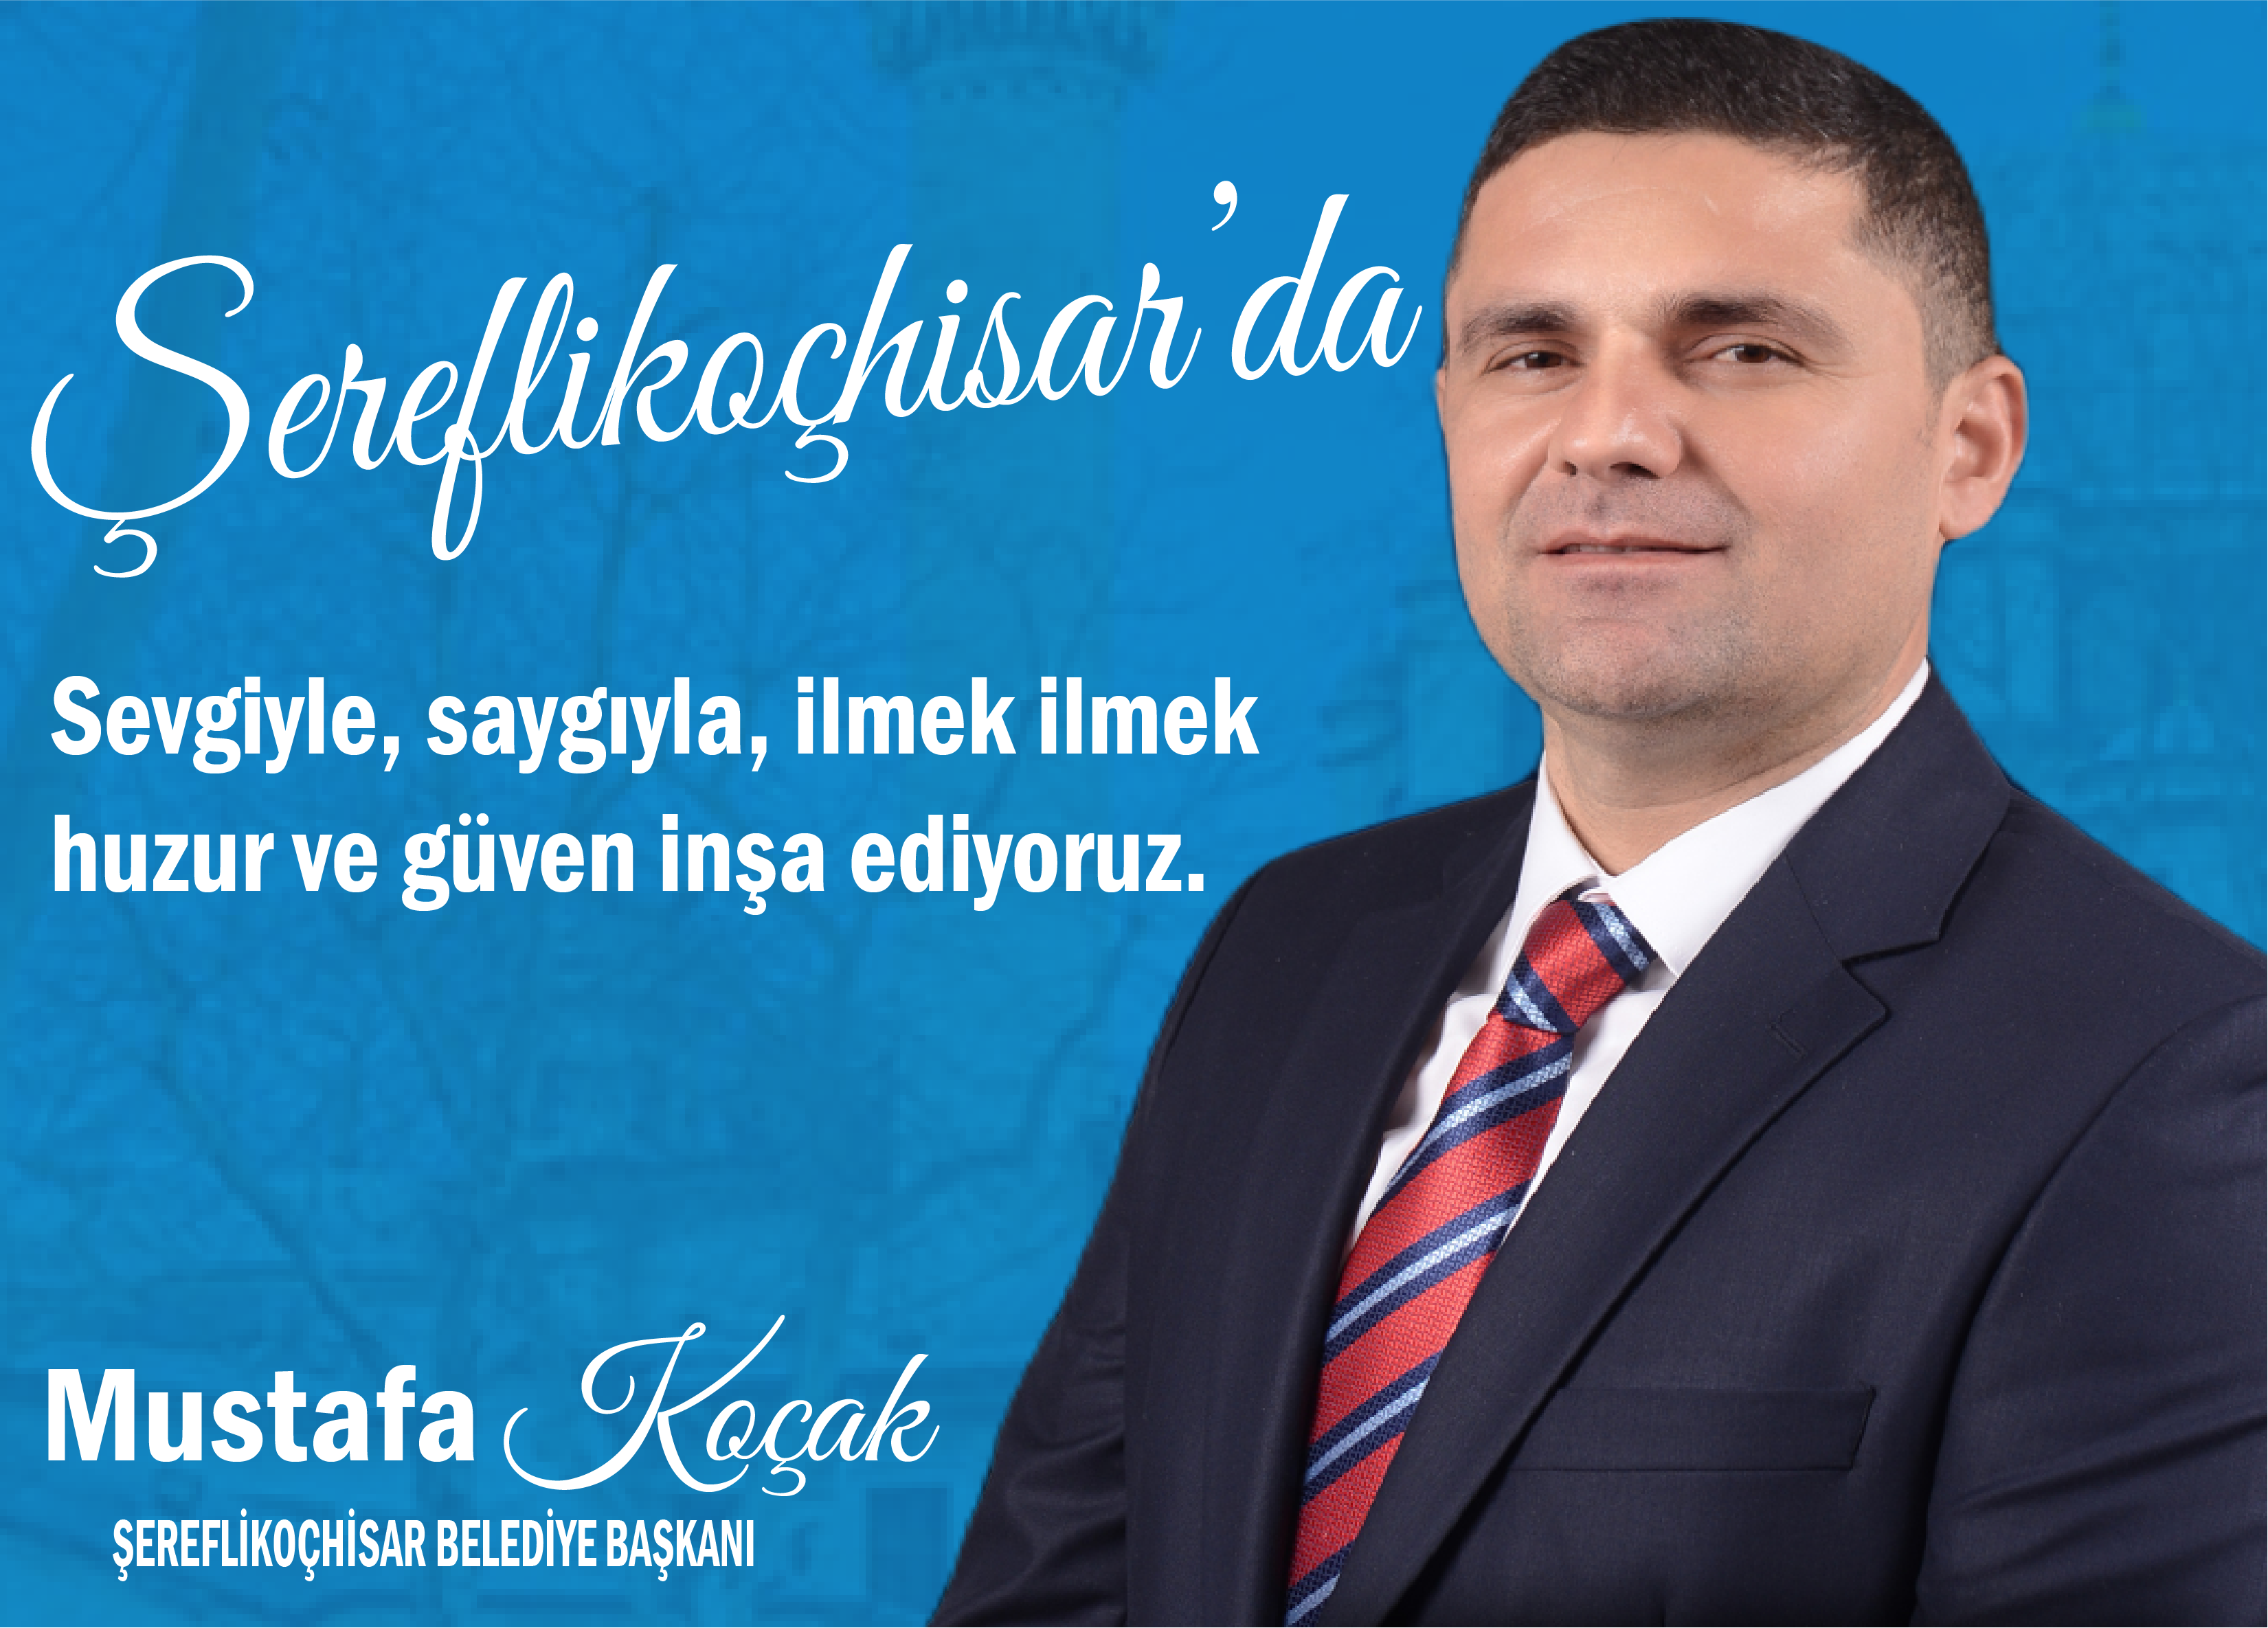 Mustafa Koçak